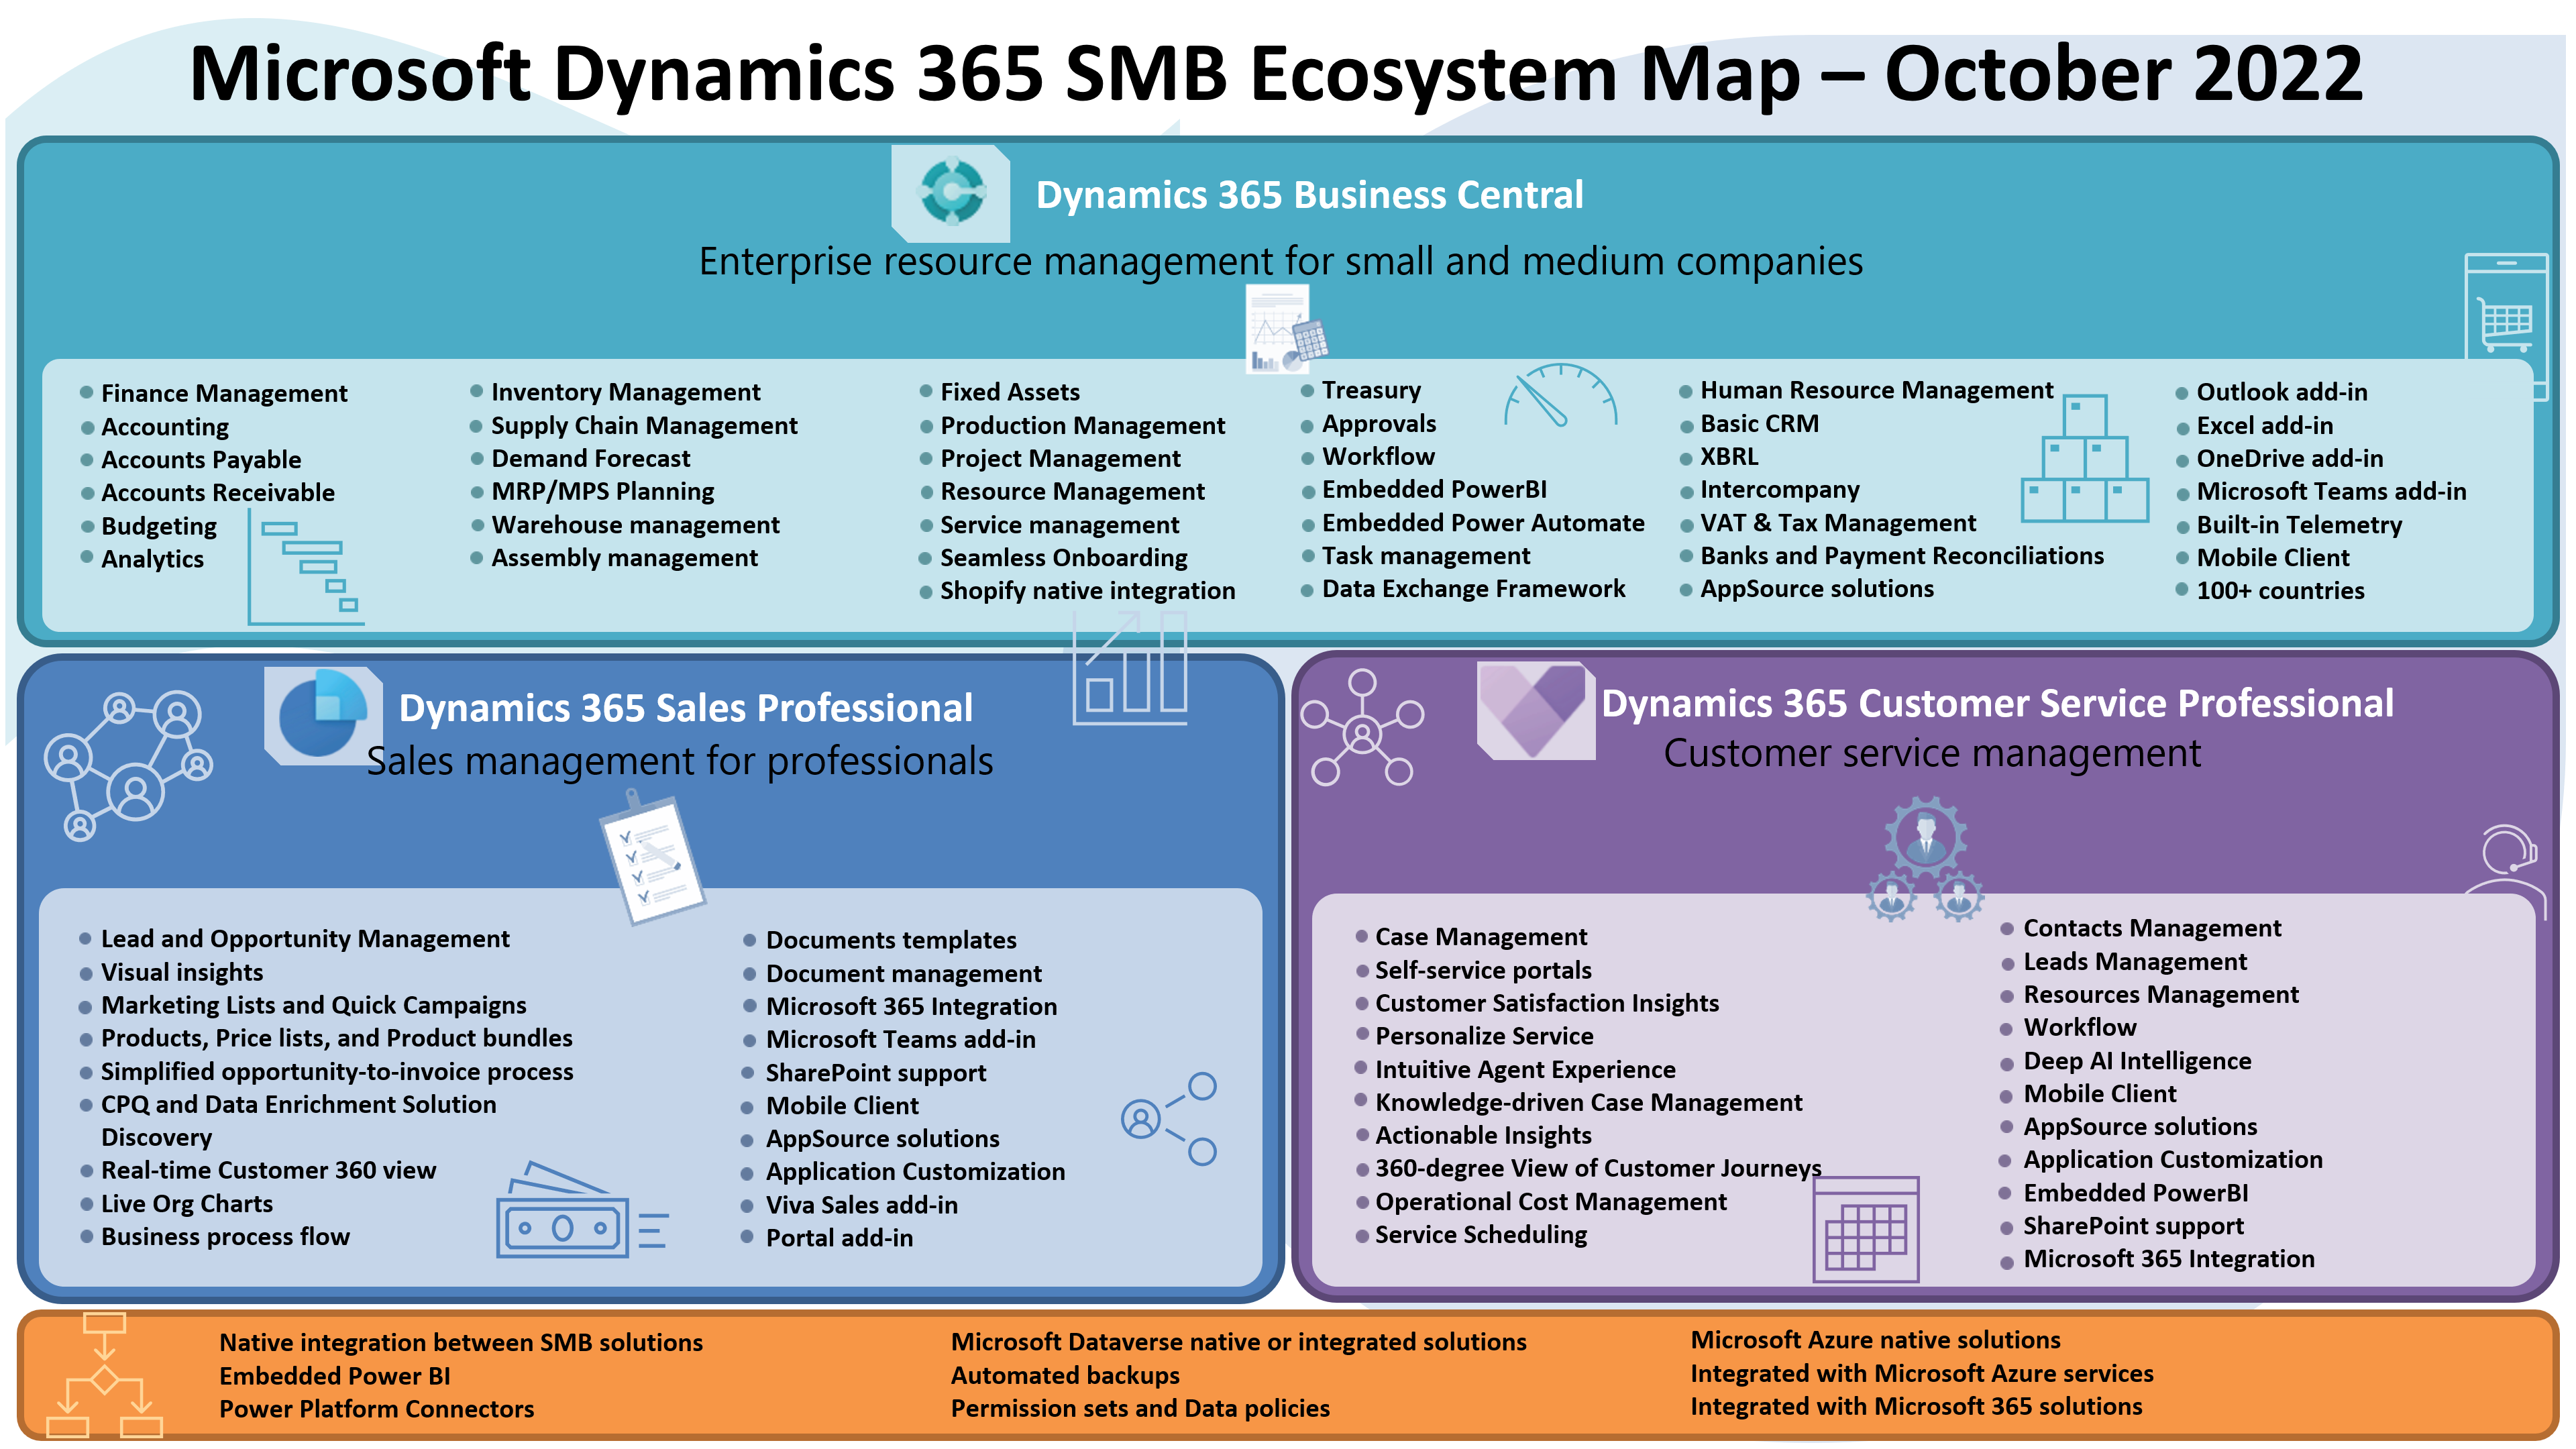 Dynamics 365 SMB Ecosystem Map October 2022 LaptrinhX / News